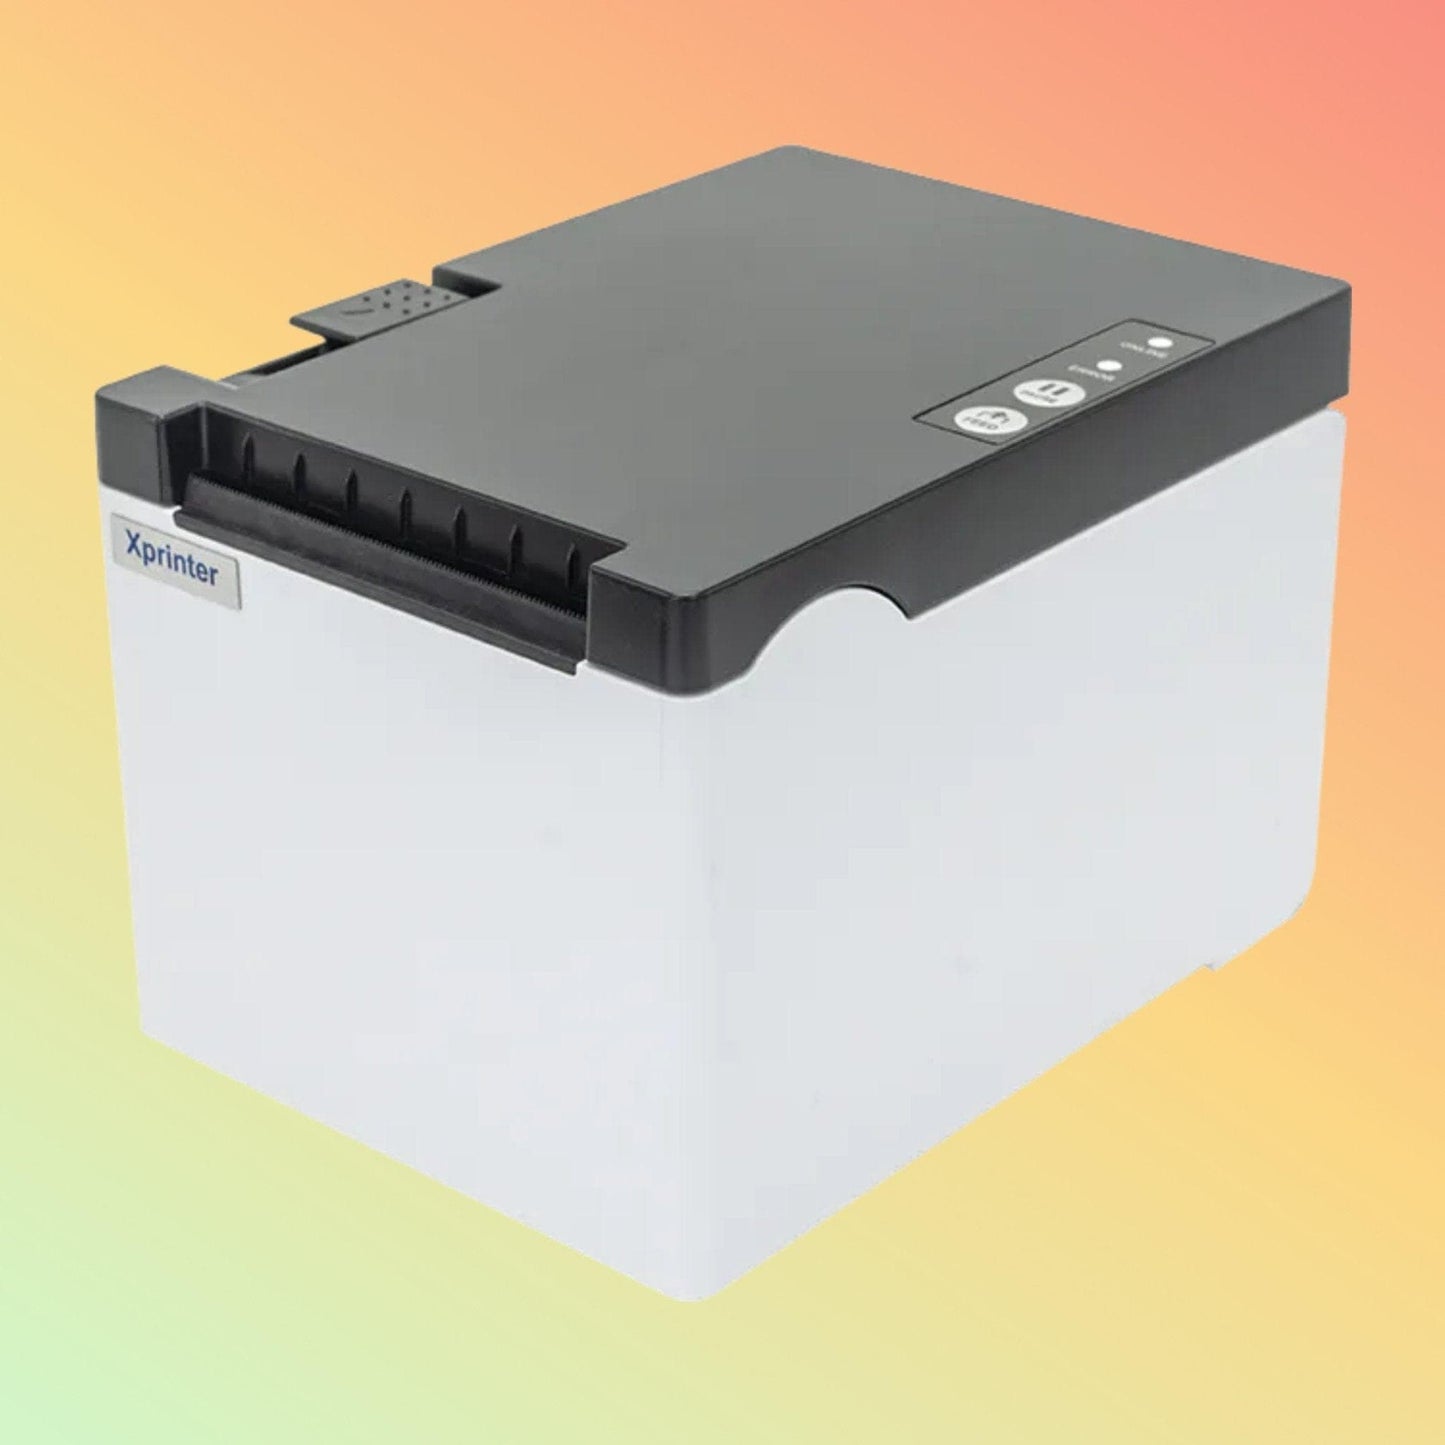 Label Printer - Xprinter XP-Q302F - Neotech